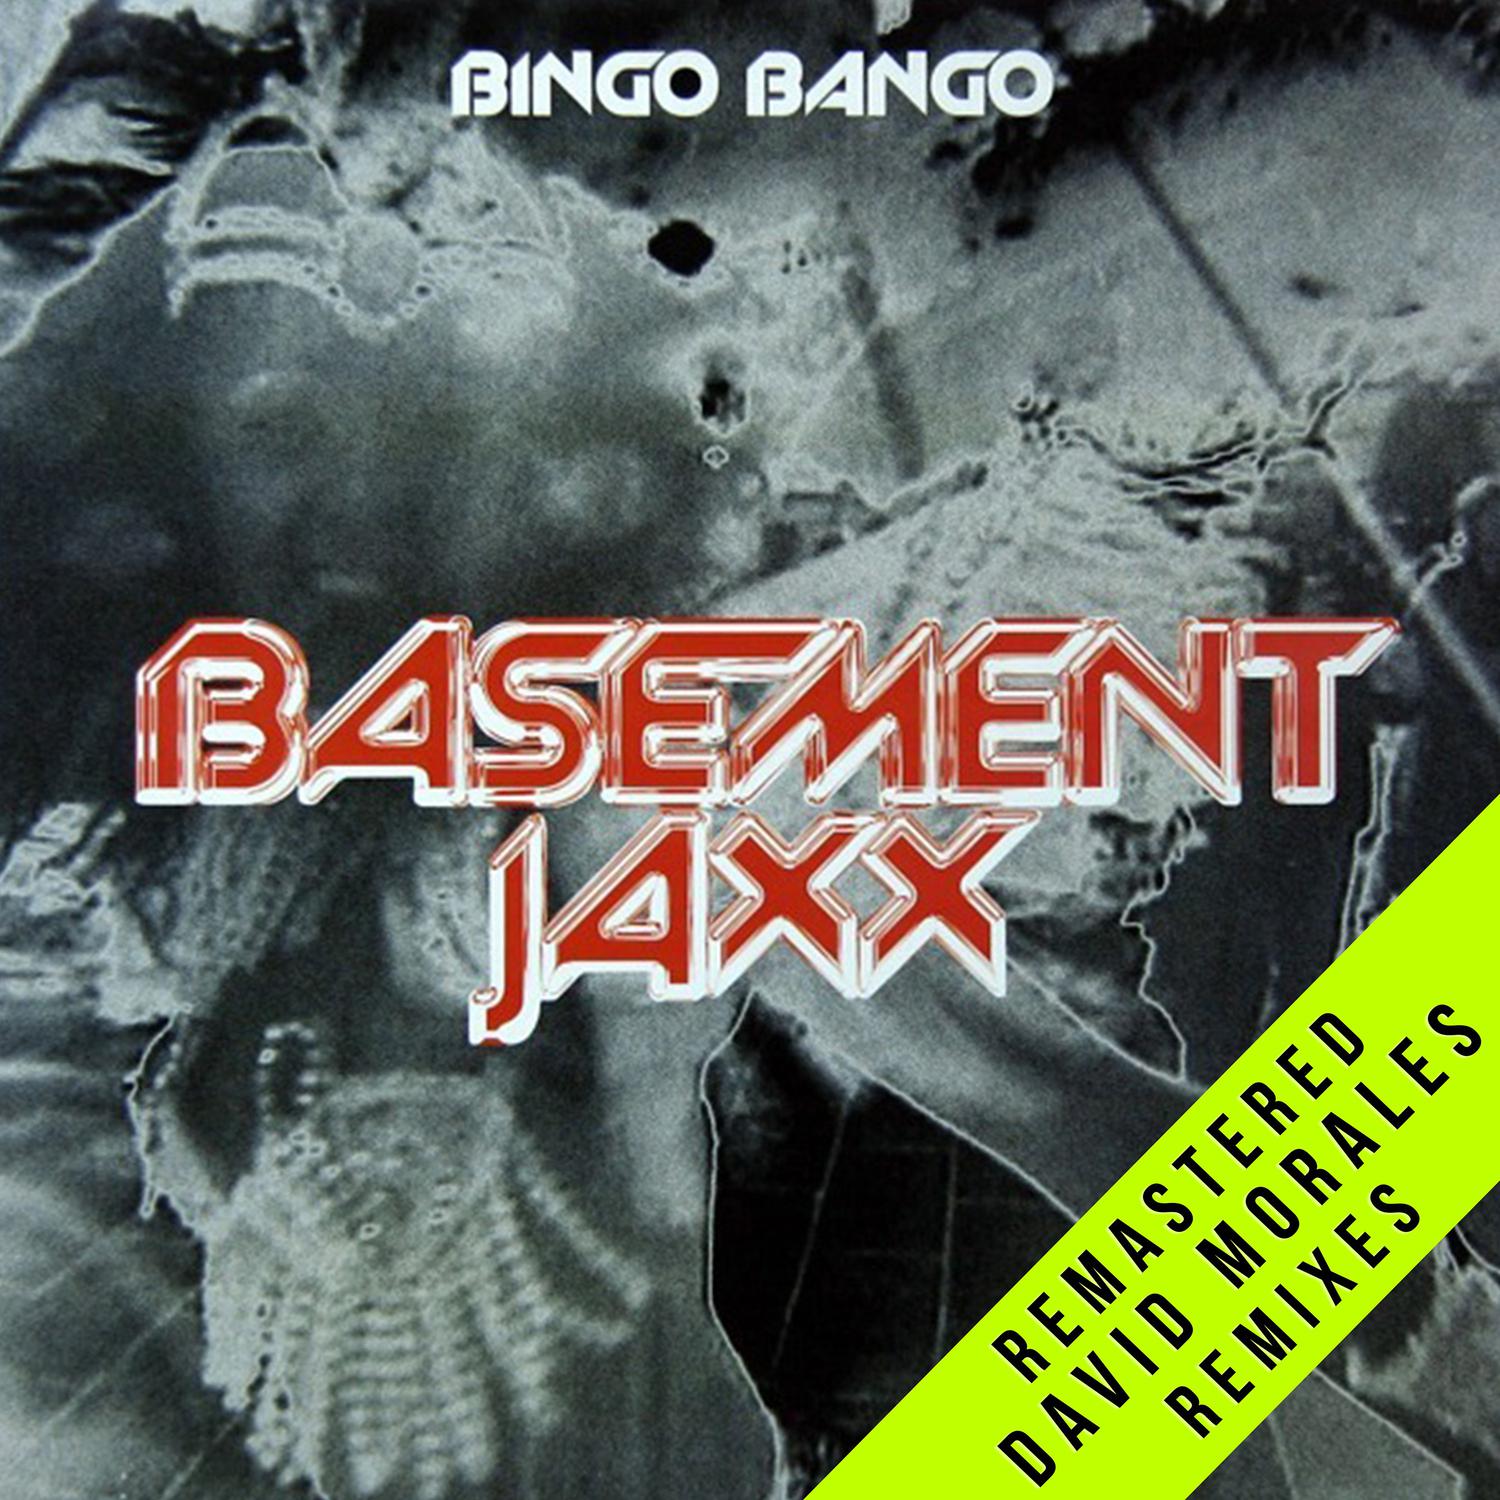 Basement Jaxx - Bingo Bango (Latin Bango Mix) [2021 Remaster]